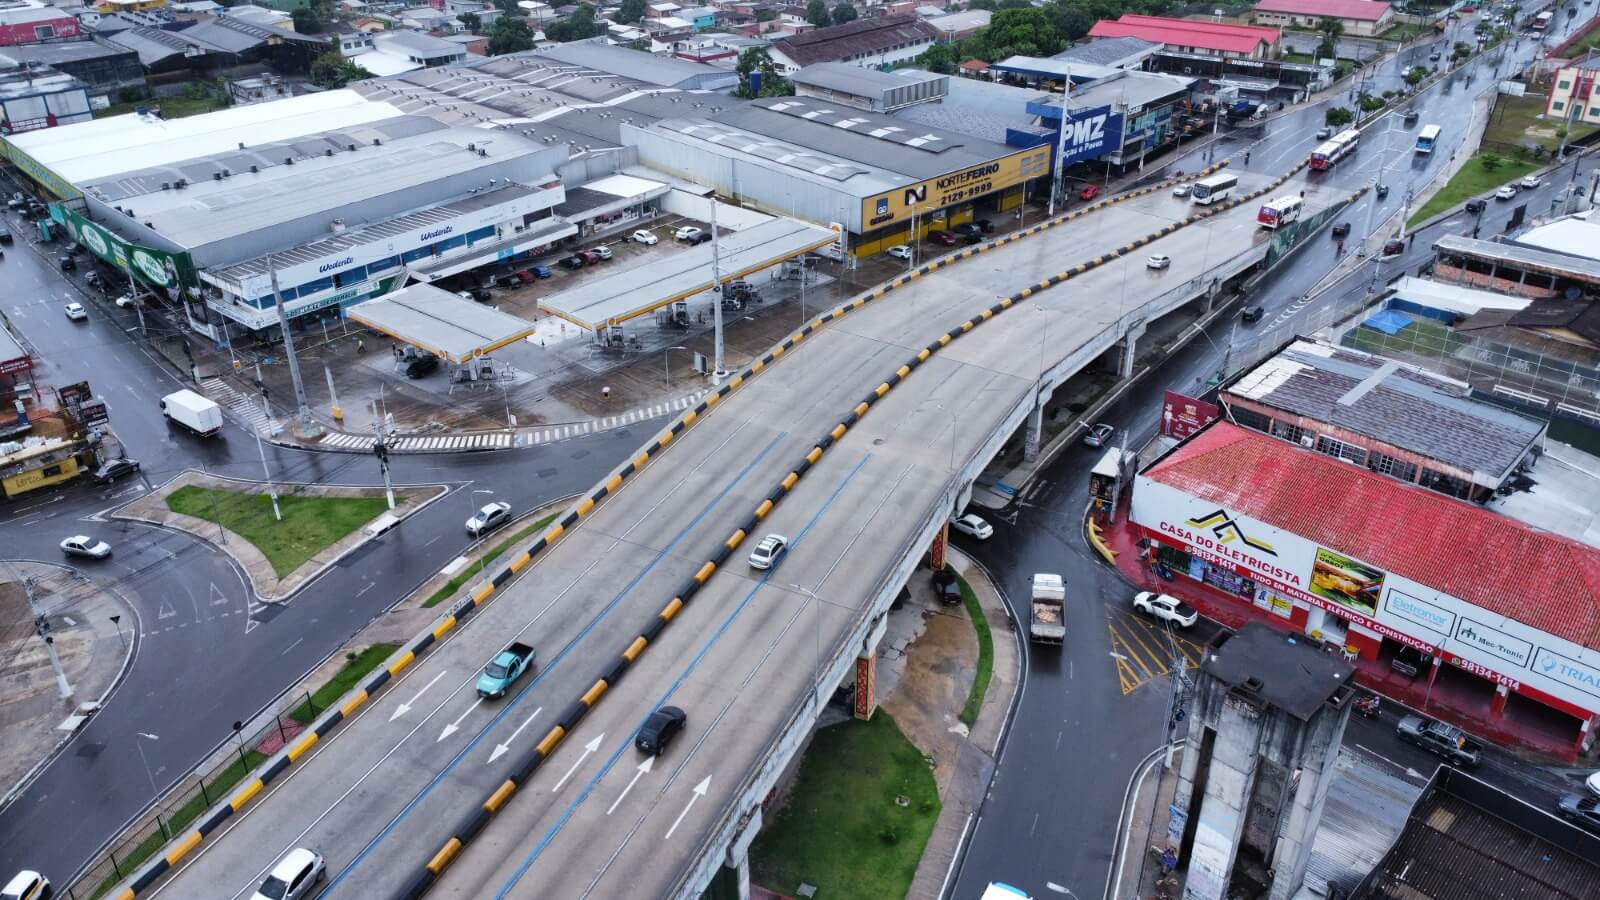 A Prefeitura de Manaus informa que as interdições para obras de reparo do viaduto do Manoa foram adiadas para depois do período do Carnaval